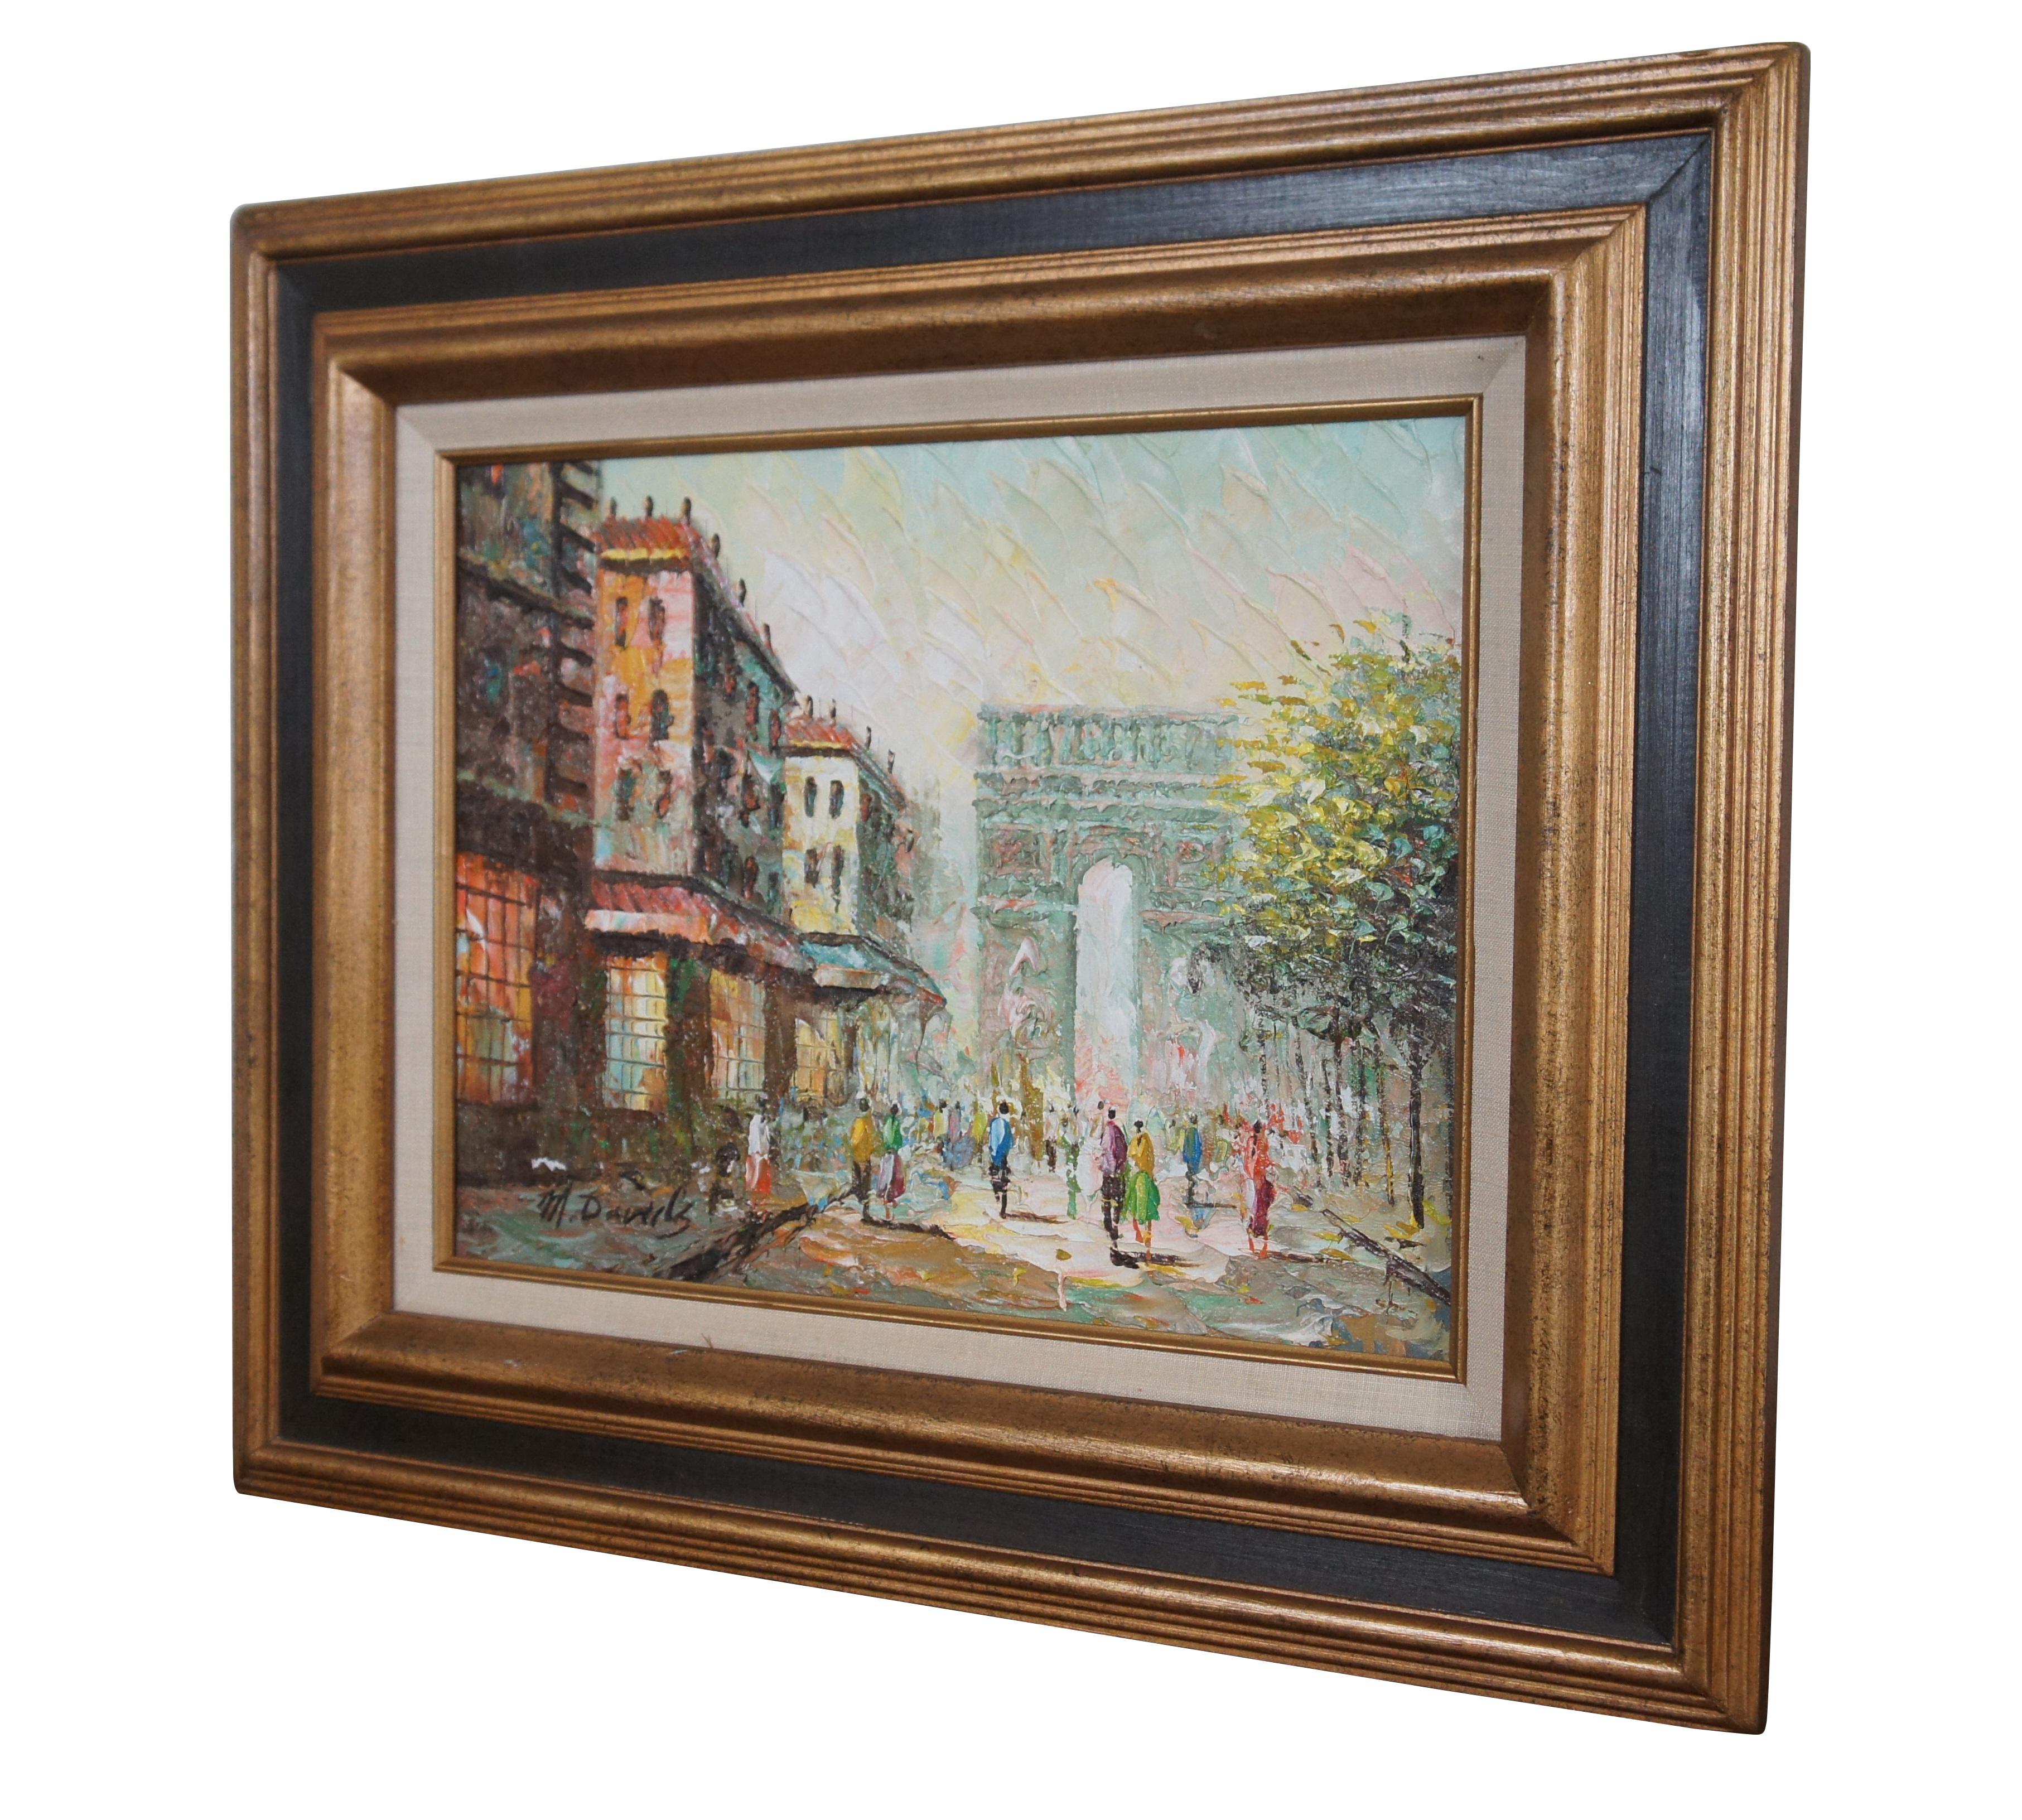 Tableau de paysage urbain parisien par M. A&M.  Une huile sur toile de l'Arc de Triomphe à Paris.  Magnifiquement peinte avec des couleurs exceptionnelles.  Signé à la main en bas à gauche.

Dimensions :
23,75